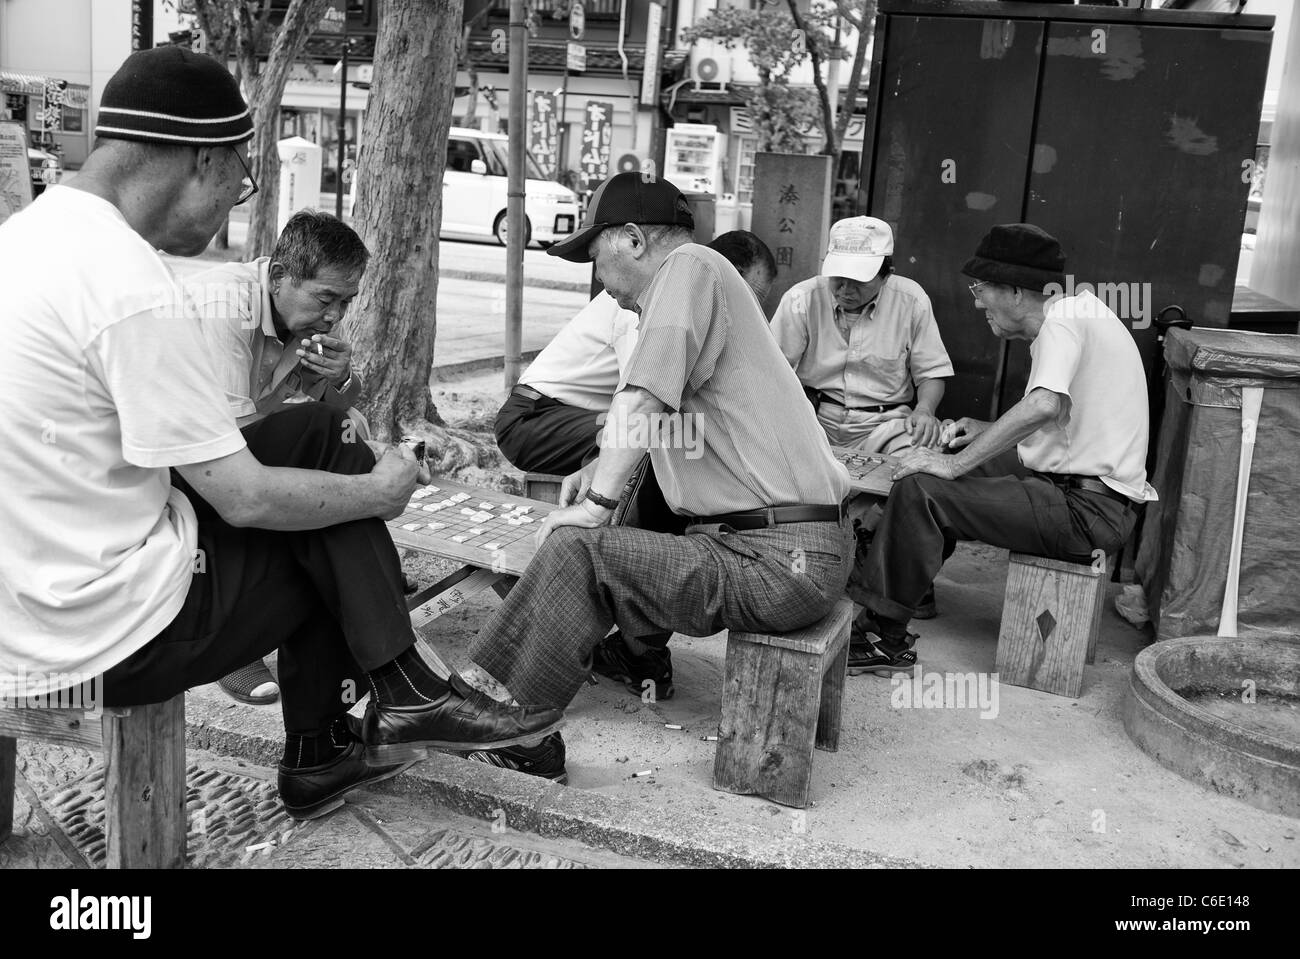 Les hommes jouer à un jeu de société, Nagasaki, Chinatown, le Japon Banque D'Images